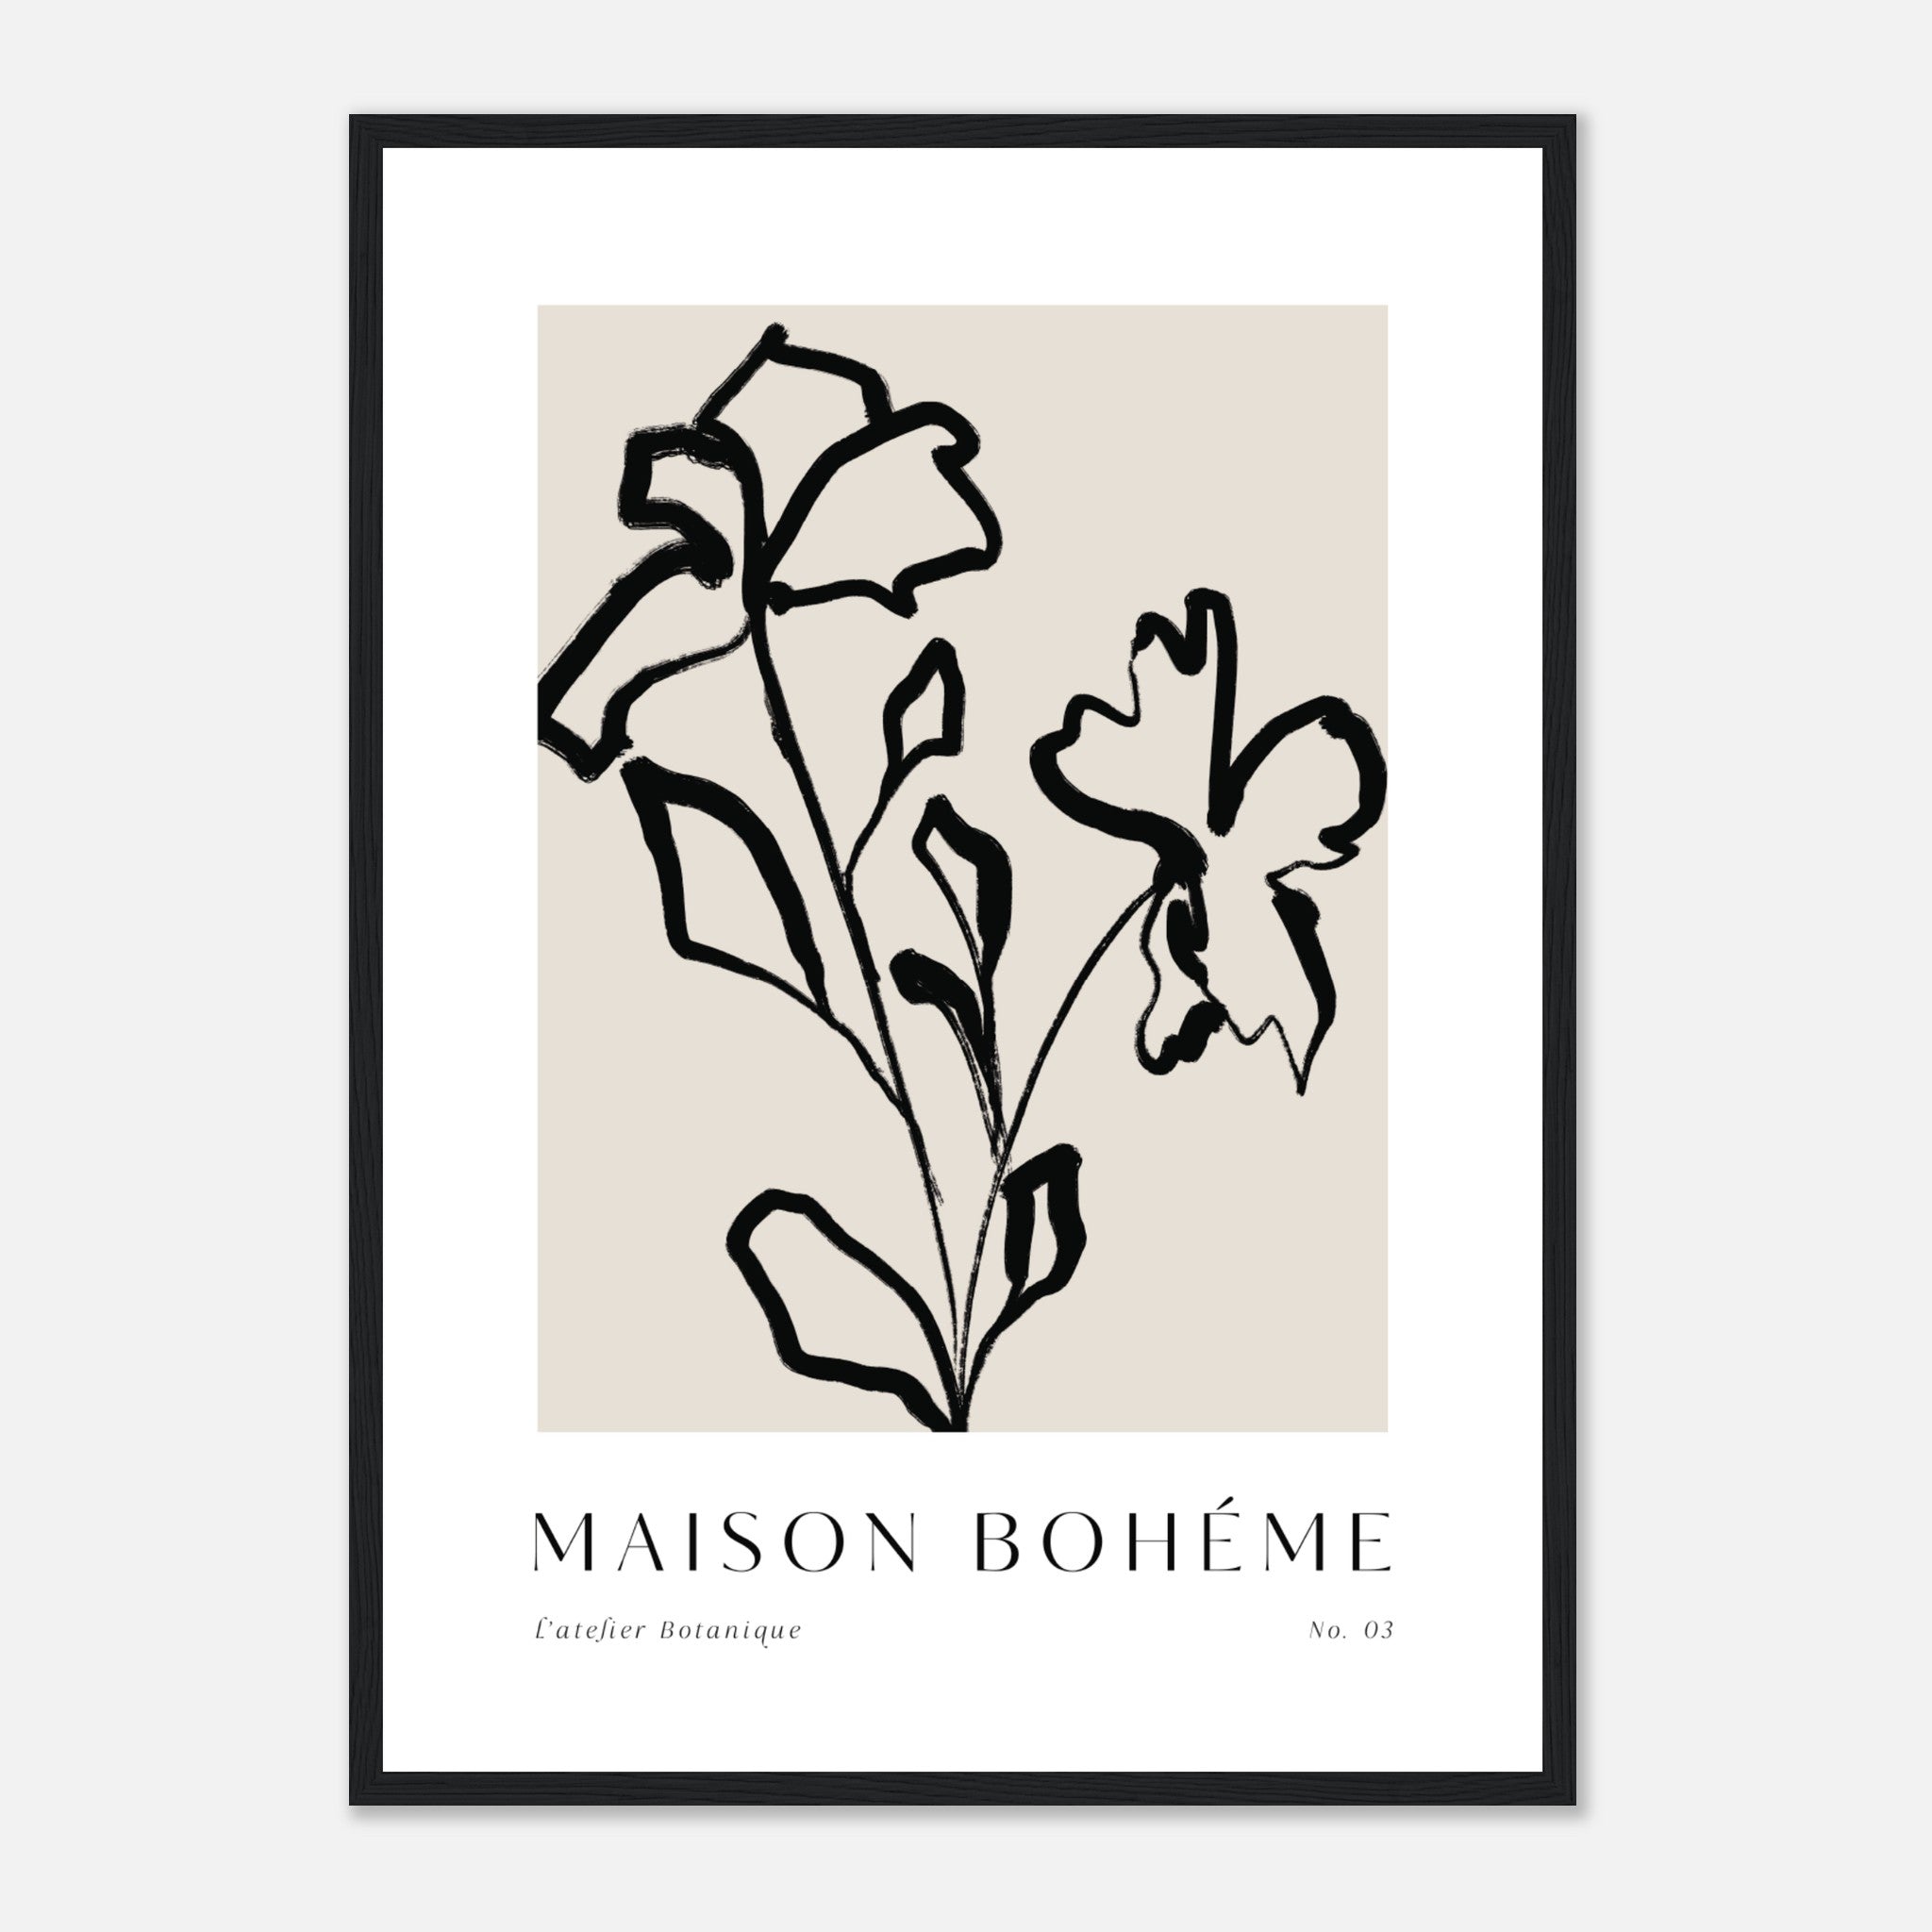 Maison Boheme No. 3 Poster